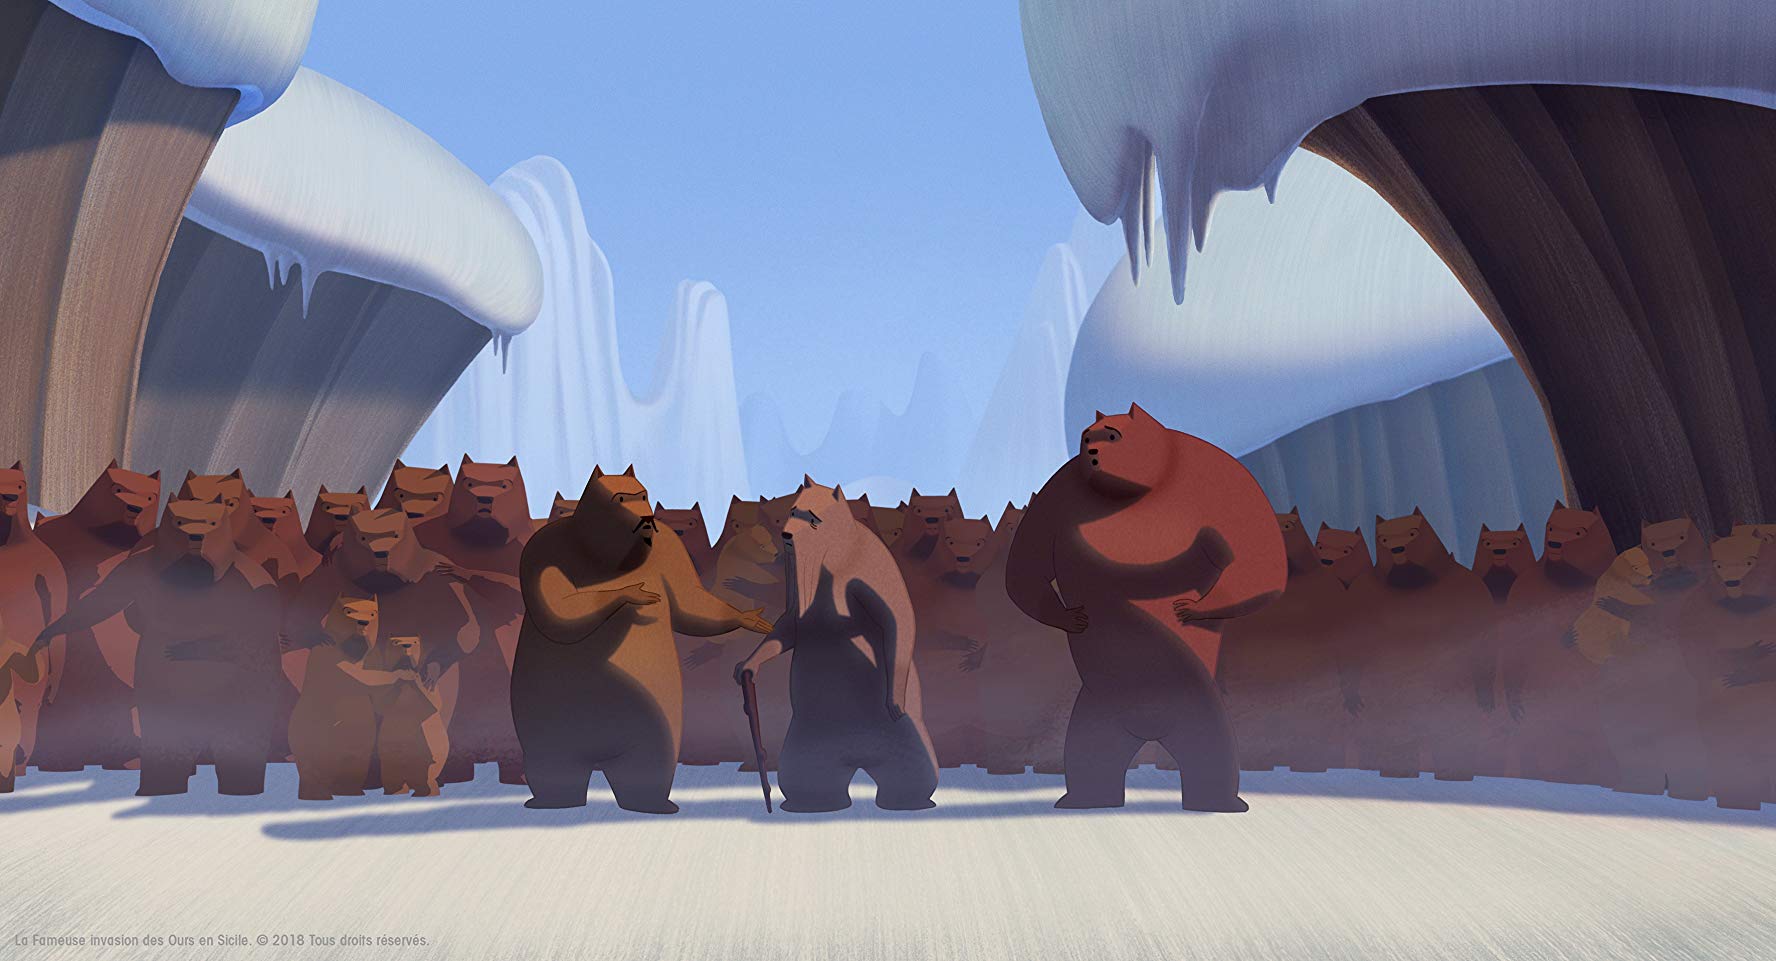 La famosa invasión de osos en Sicilia